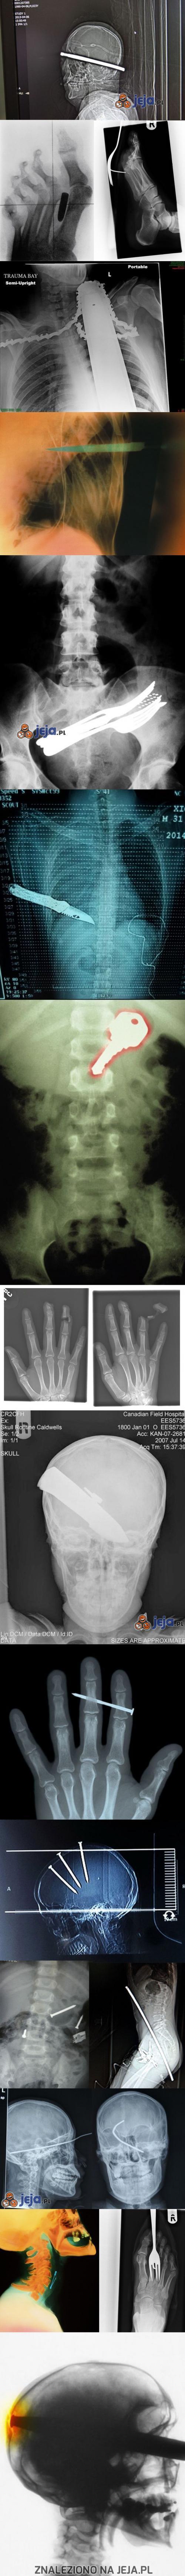 Szokujące zdjęcia rentgenowskie